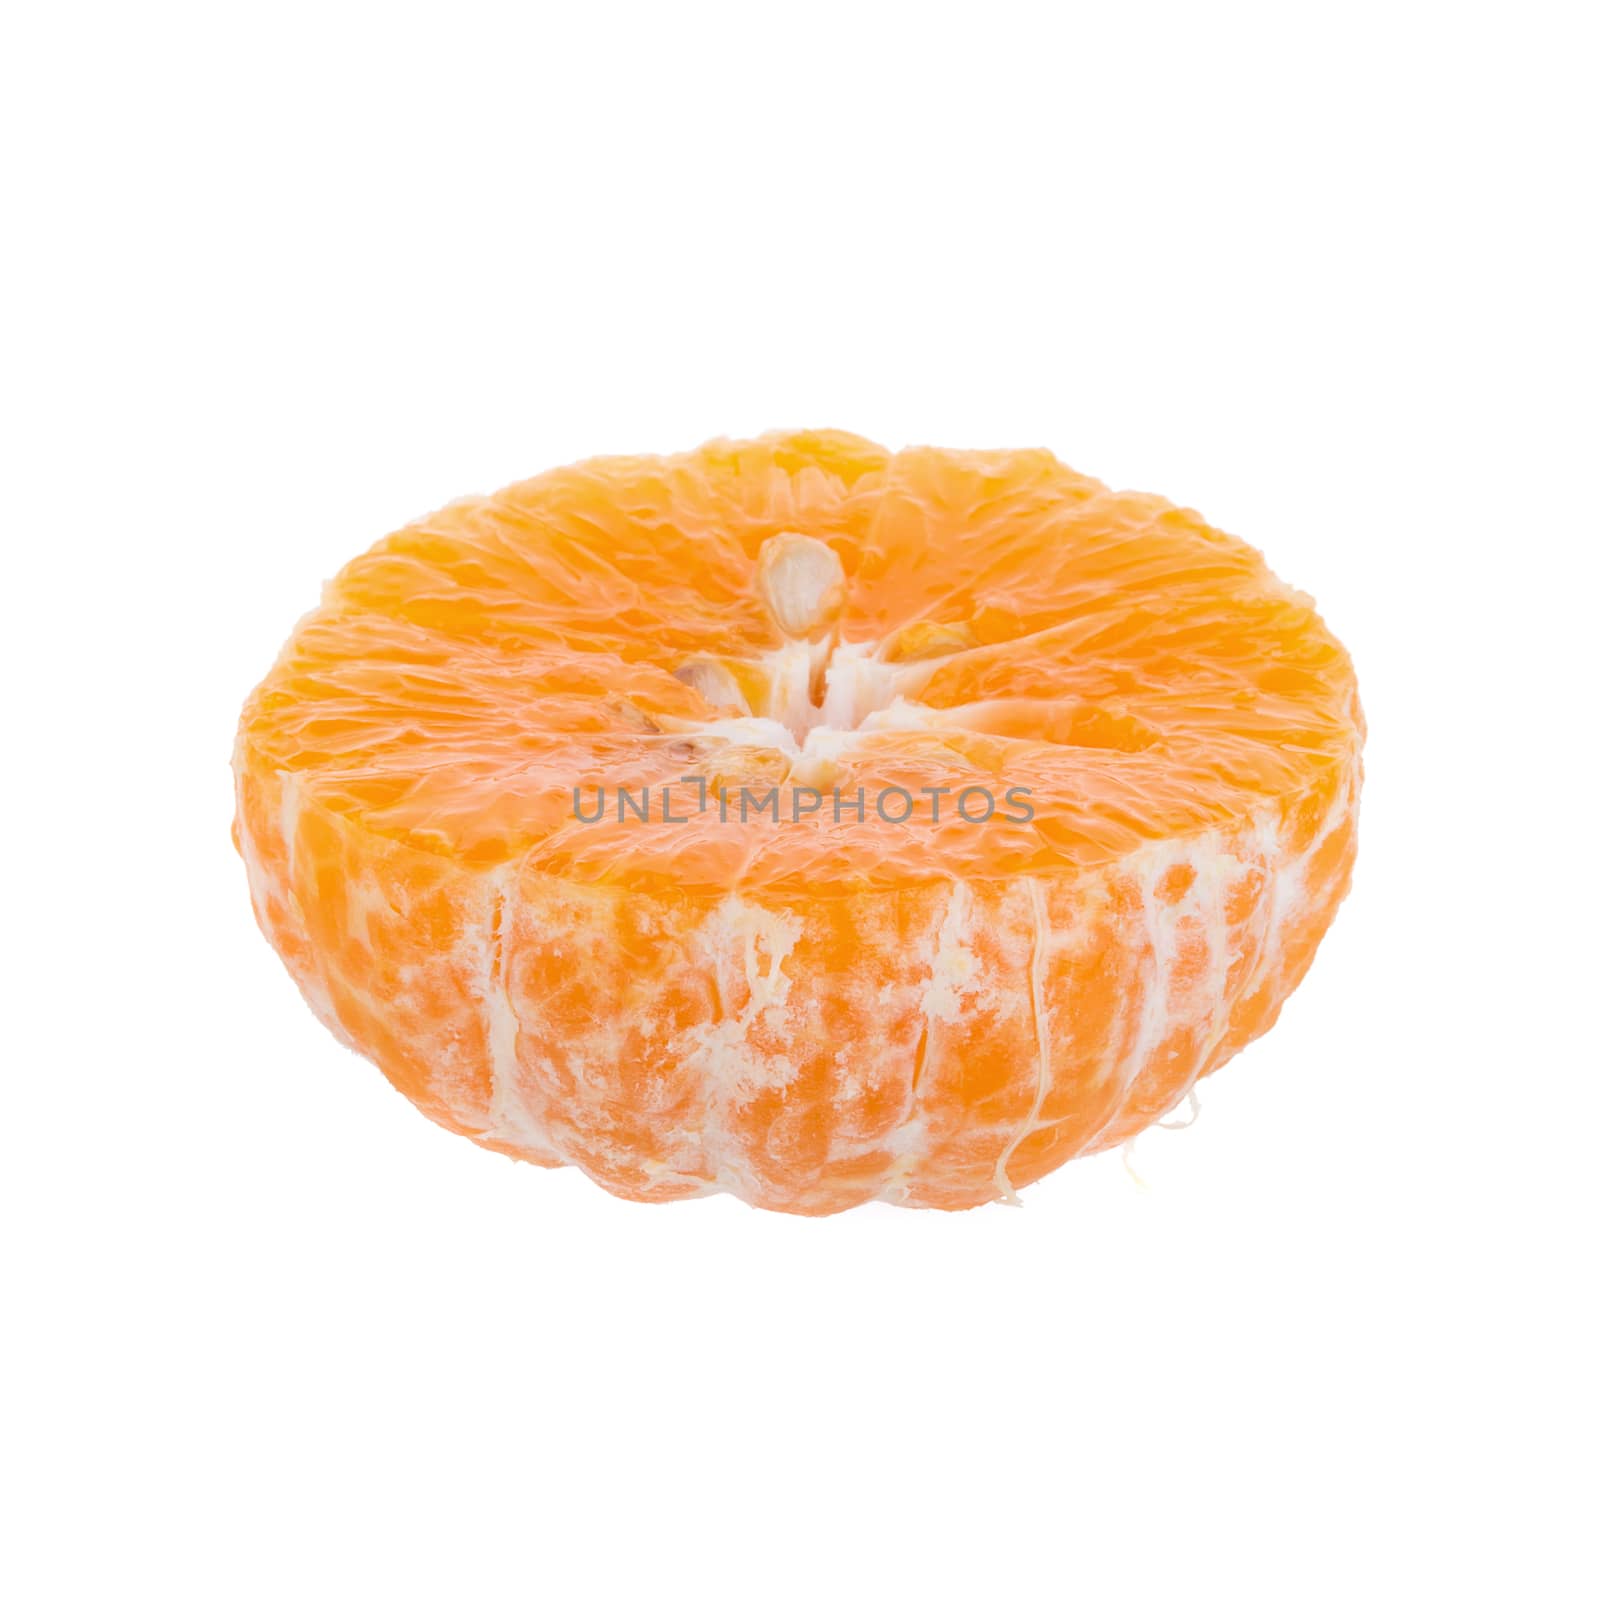 Half orange fruit on white background, fresh and juicy by kaiskynet